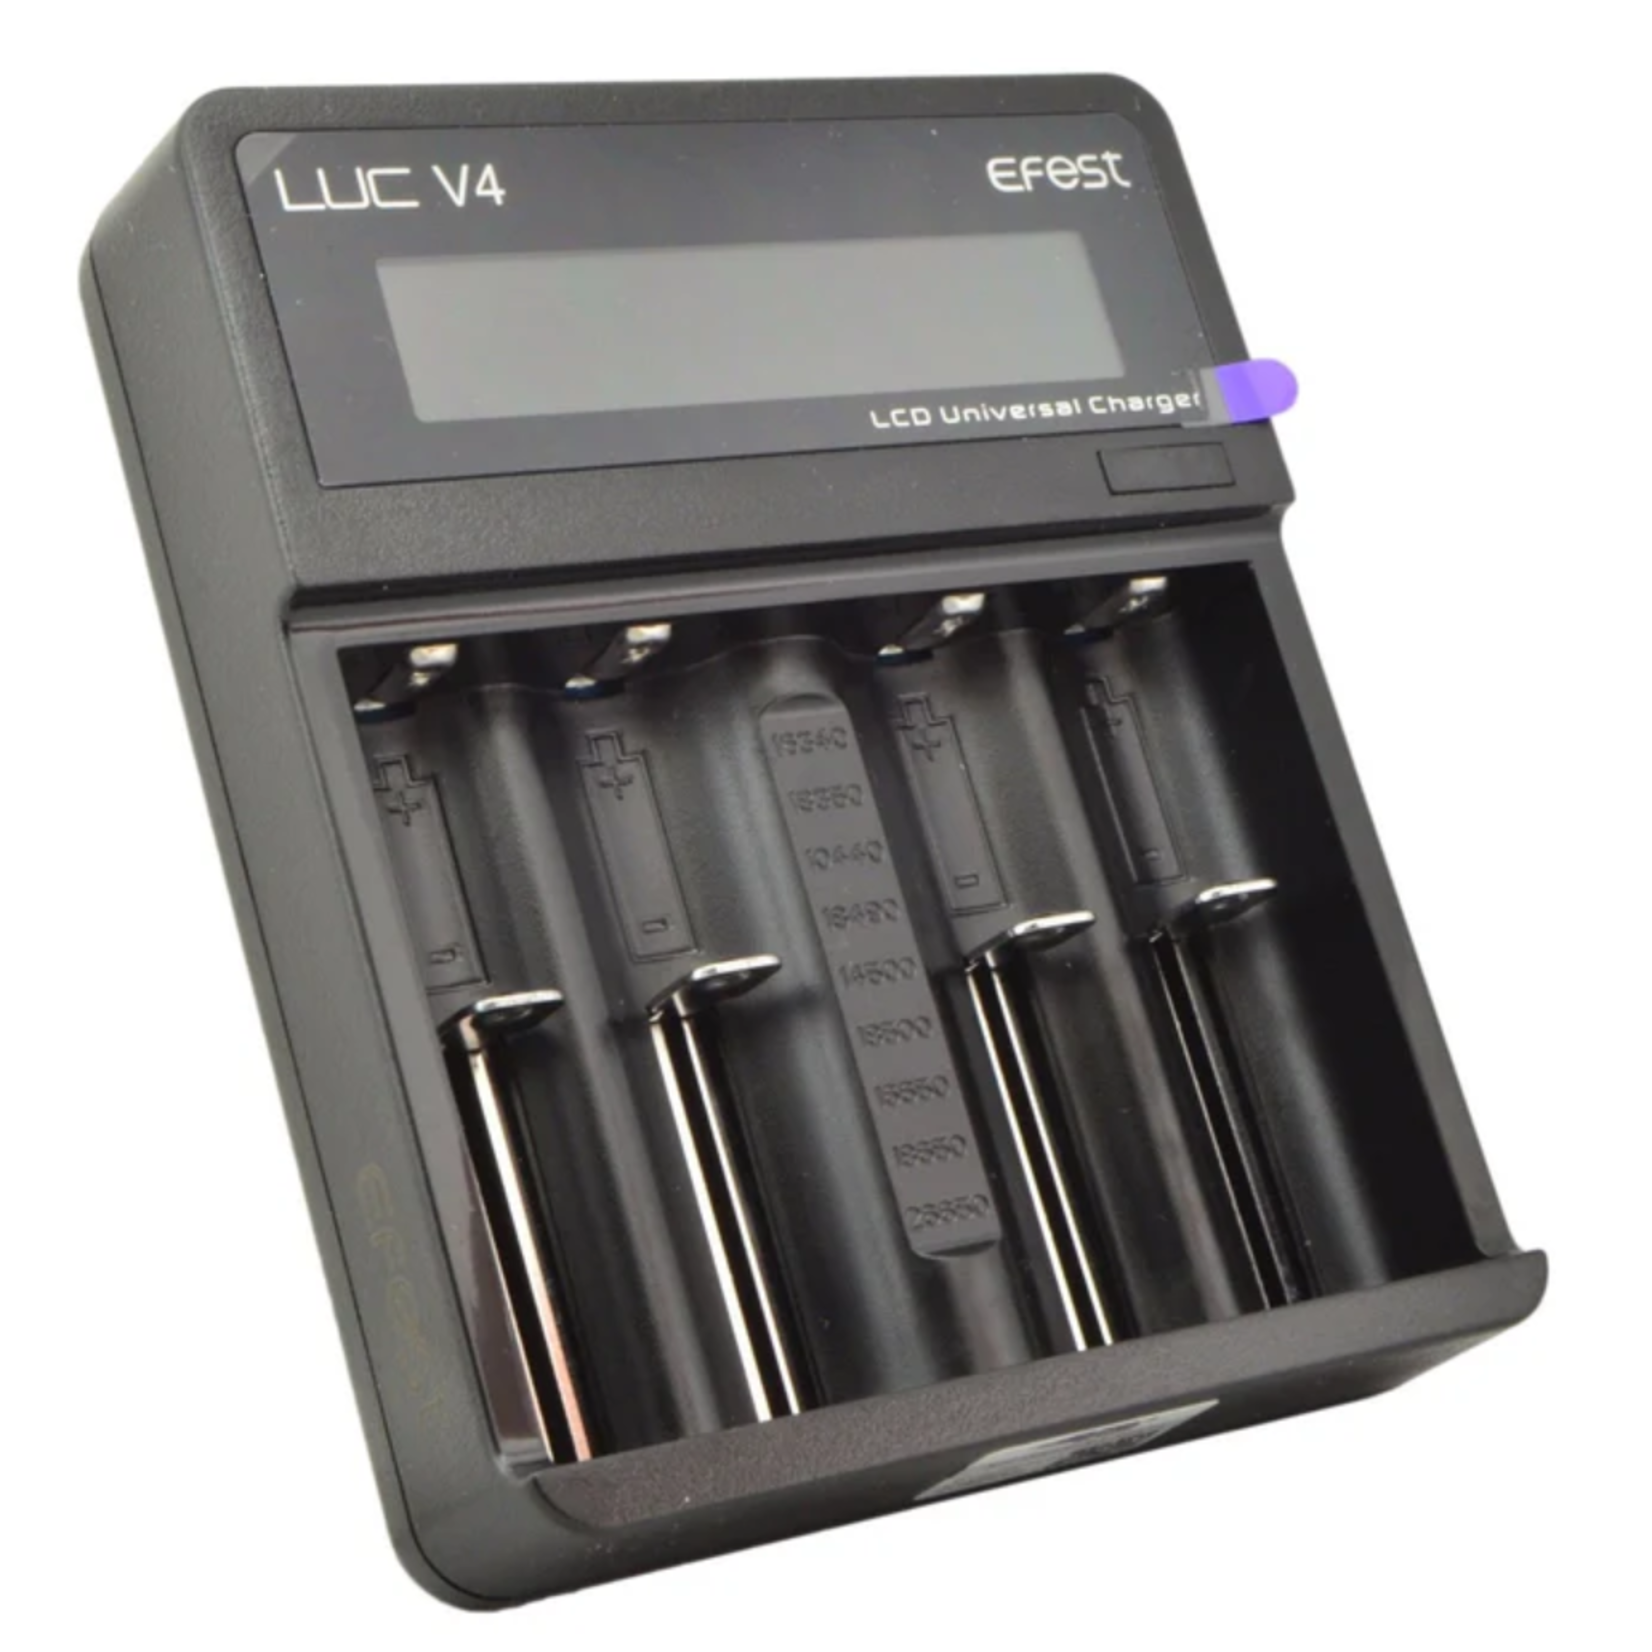 eFest eFest Elite LUC V4 HD (Quad) Battery Charger